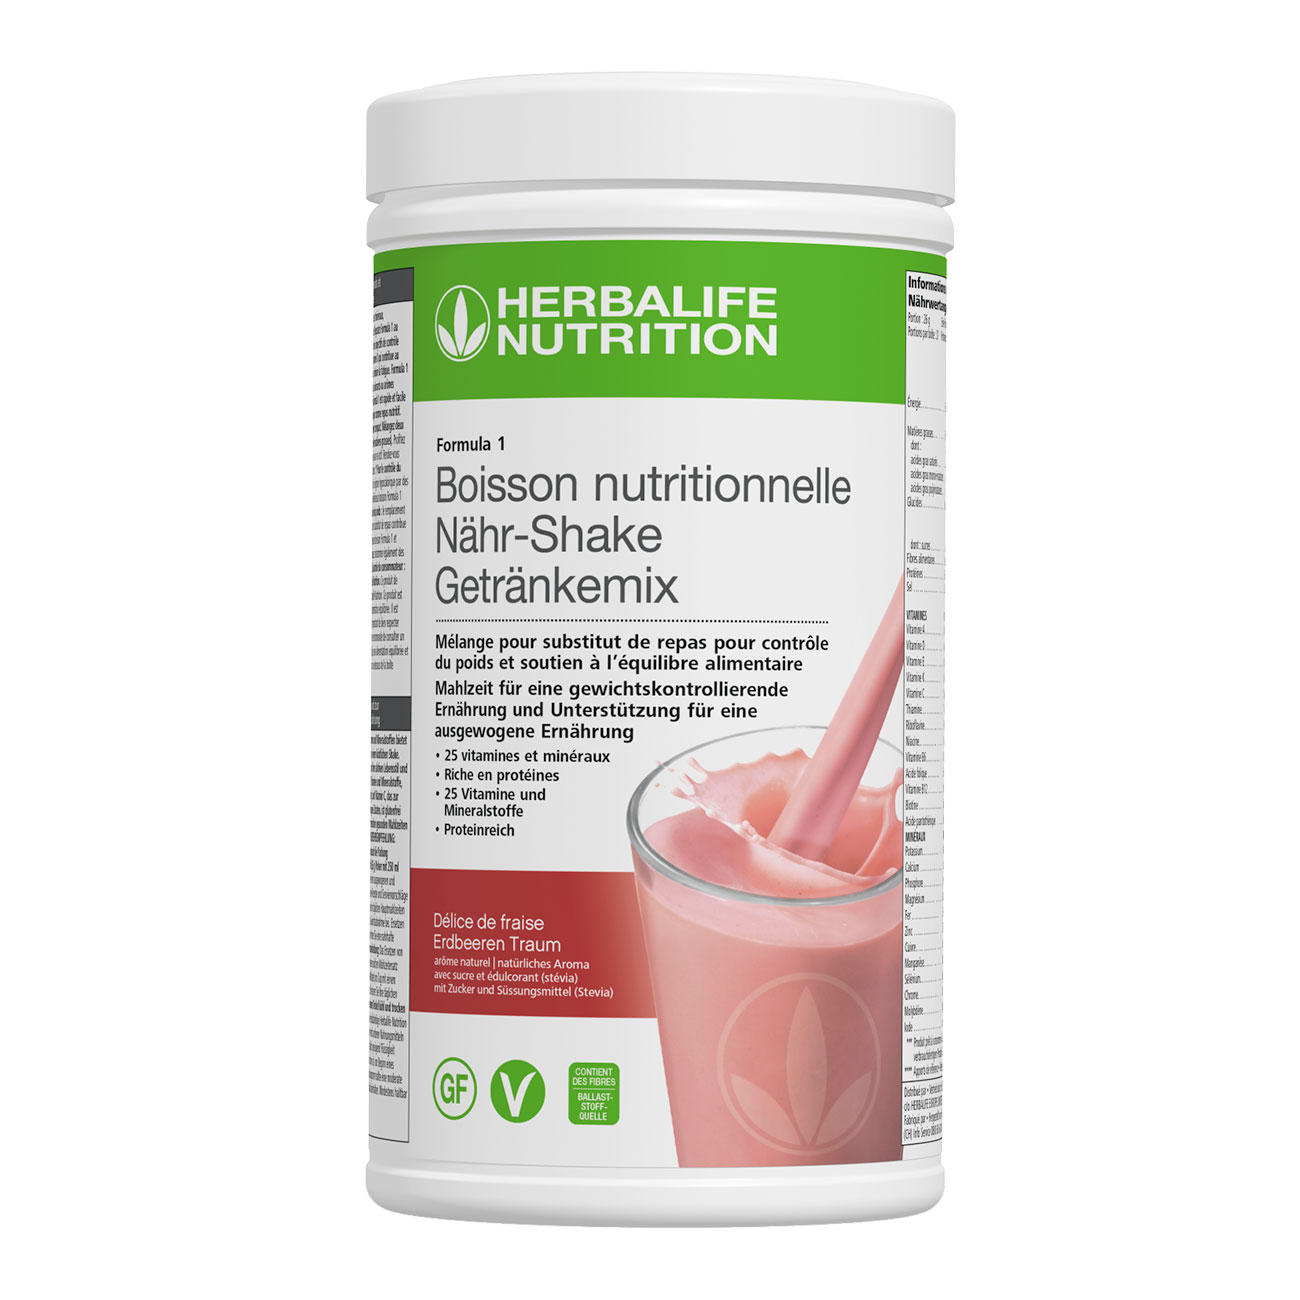 Formula 1 Délice de fraise  – un délicieux shake riche en protéines. Ingrédients vegan et sans-gluten. Un repas complet. 